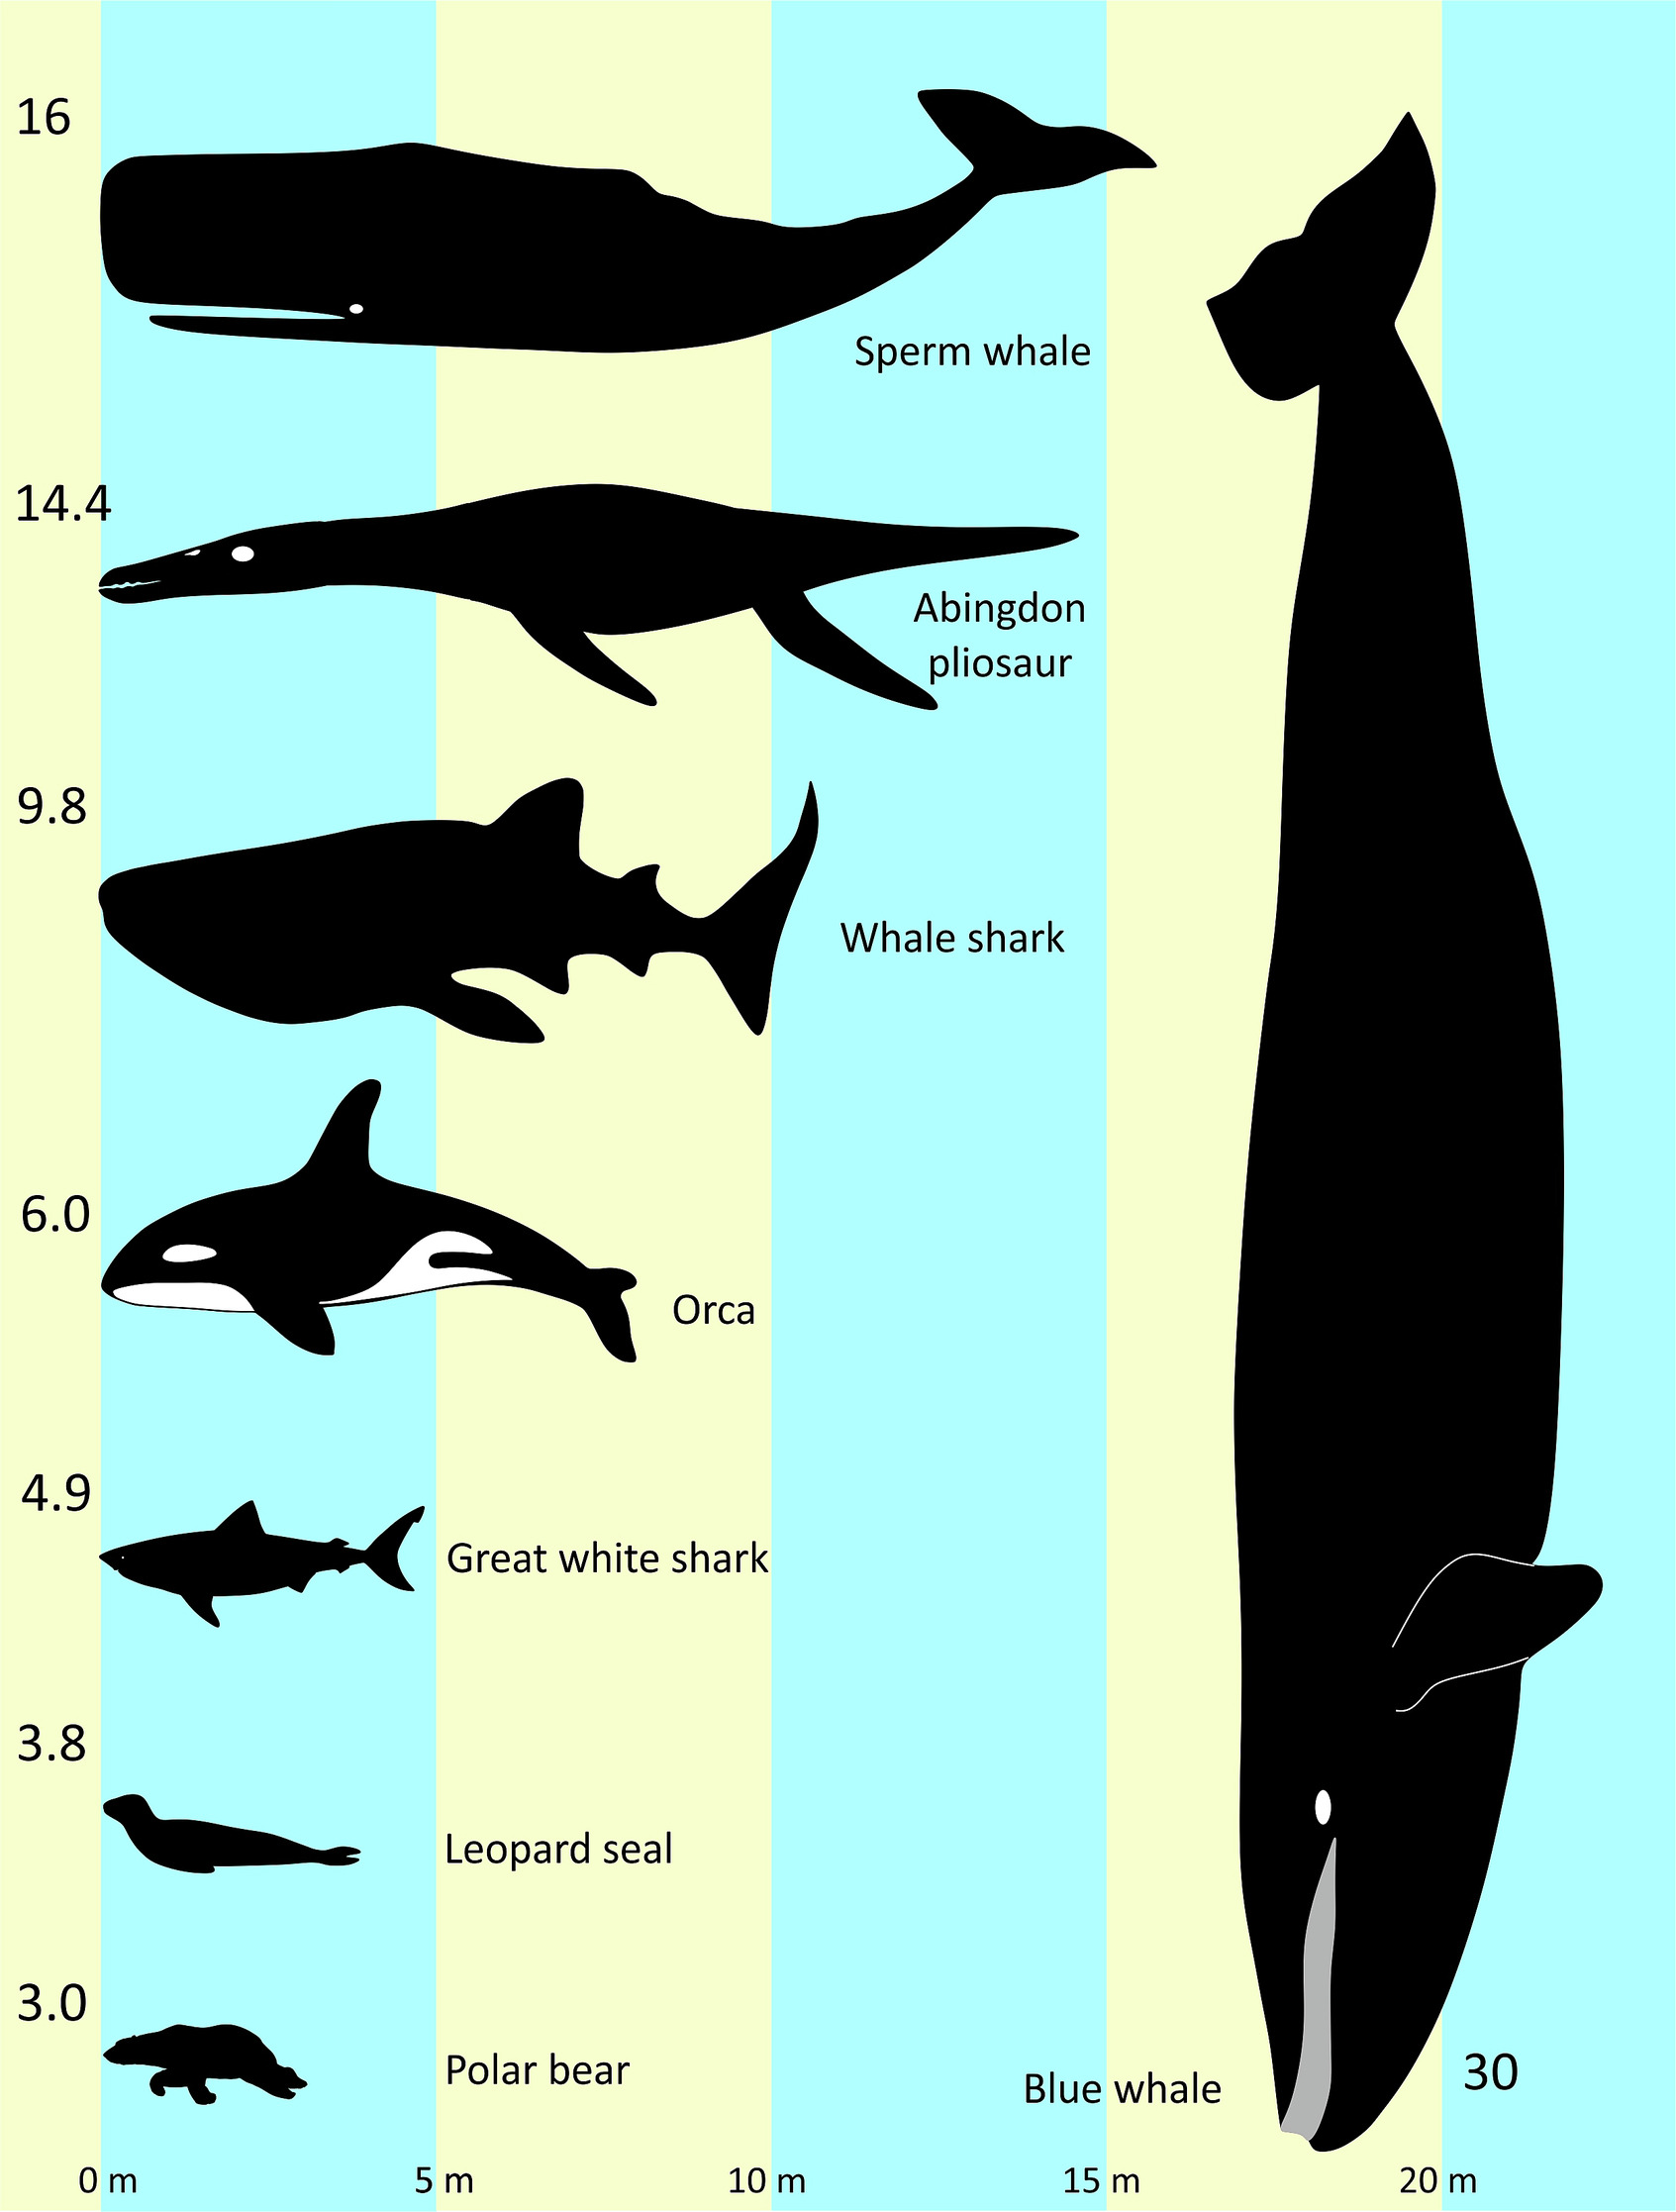 Genel vücut boyutlarını göstermek için Abingdon pliosaur'u bir dizi yeni suda yaşayan ve yarı suda yaşayan omurgalıyla bir 'güzellik yarışmasına' yerleştiren diyagram.